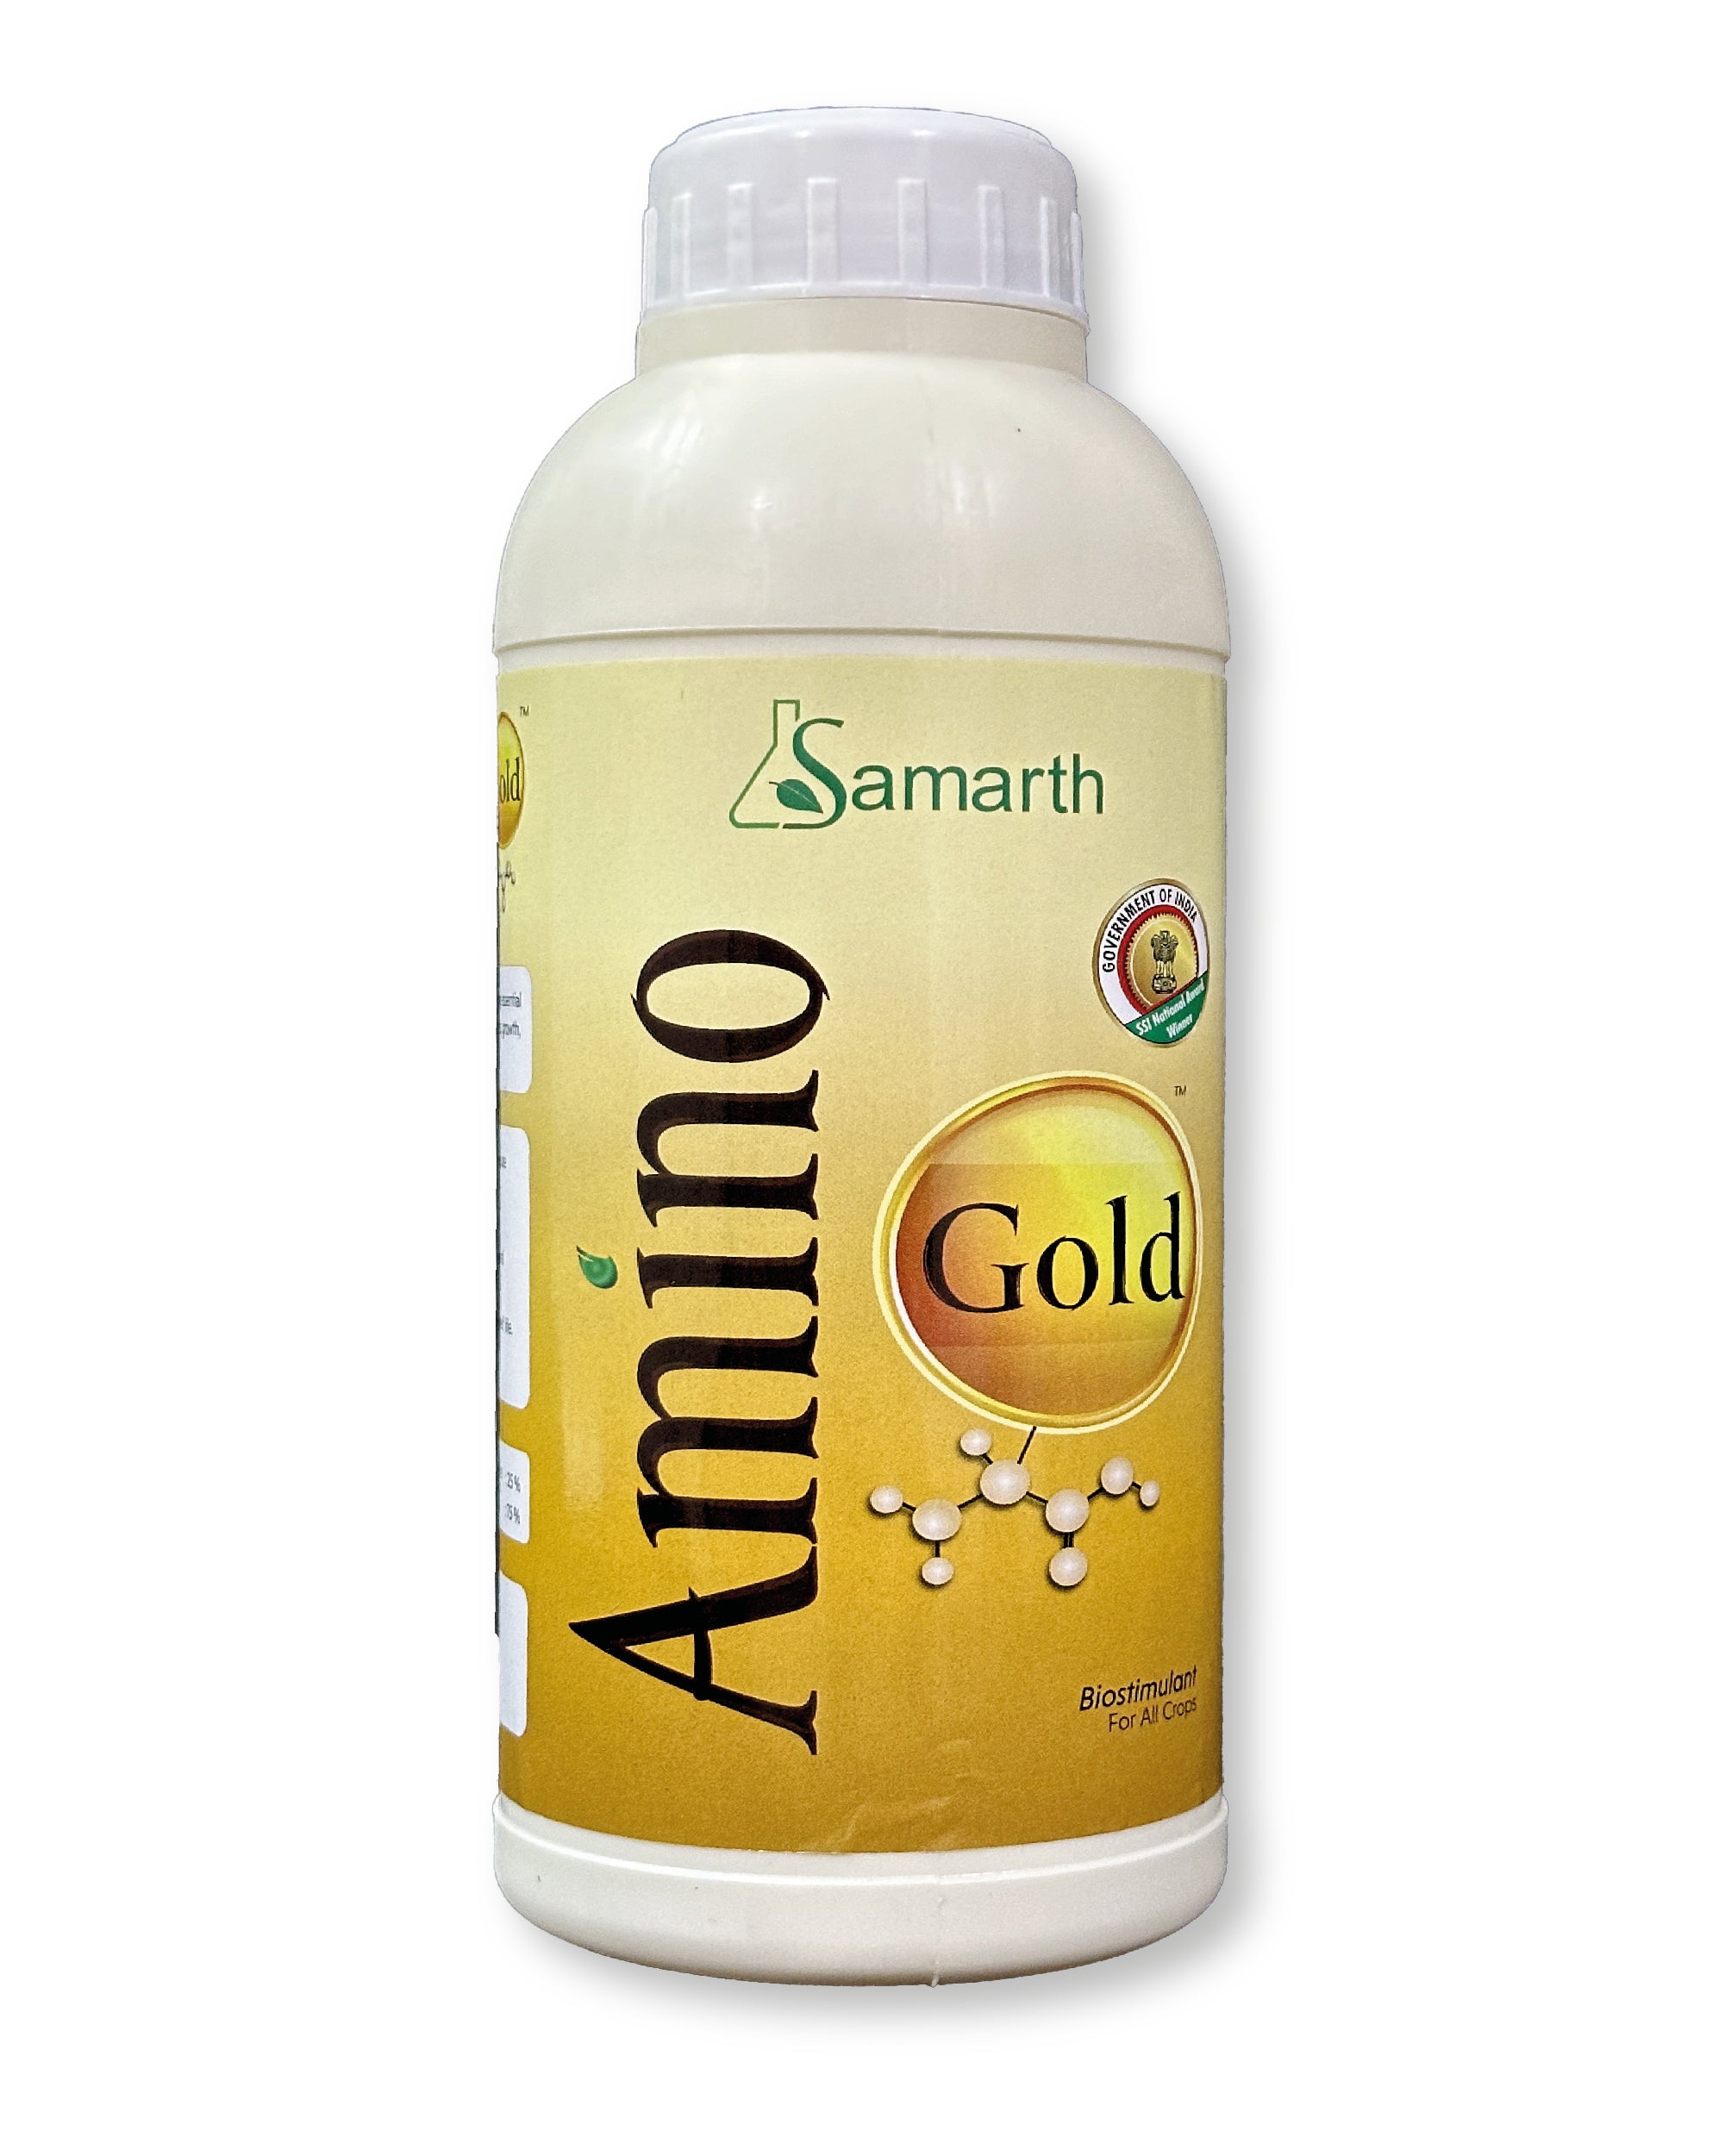 SAMRATH AMINO GOLD product  Image